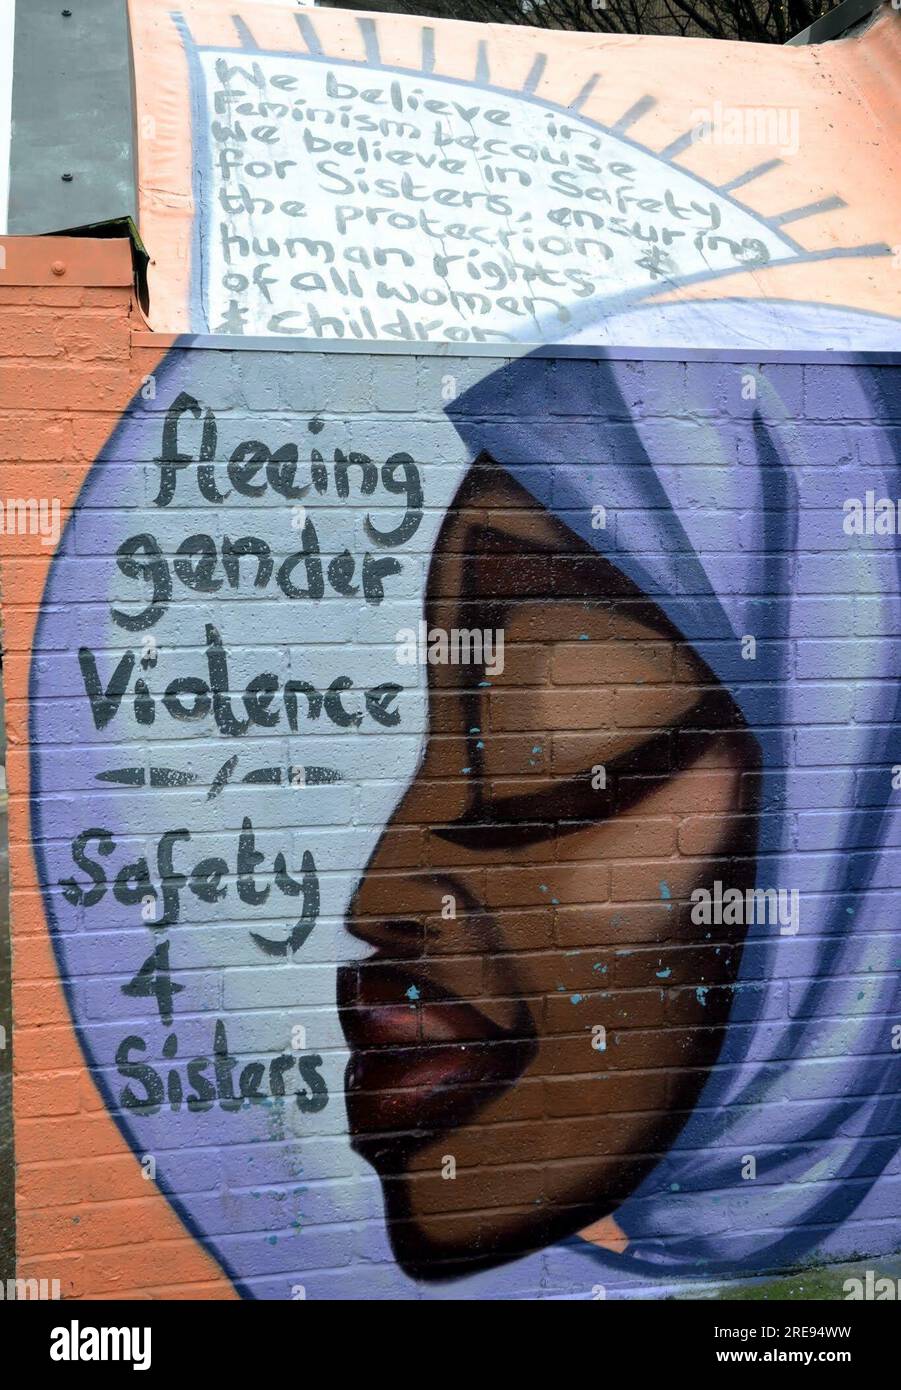 Arte callejero, pintura en la pared vieja en el barrio norte, mensaje huye de la violencia de género, seguridad 4 hermanas, arte urbano, archivo: Manchester, Reino Unido, Foto de stock